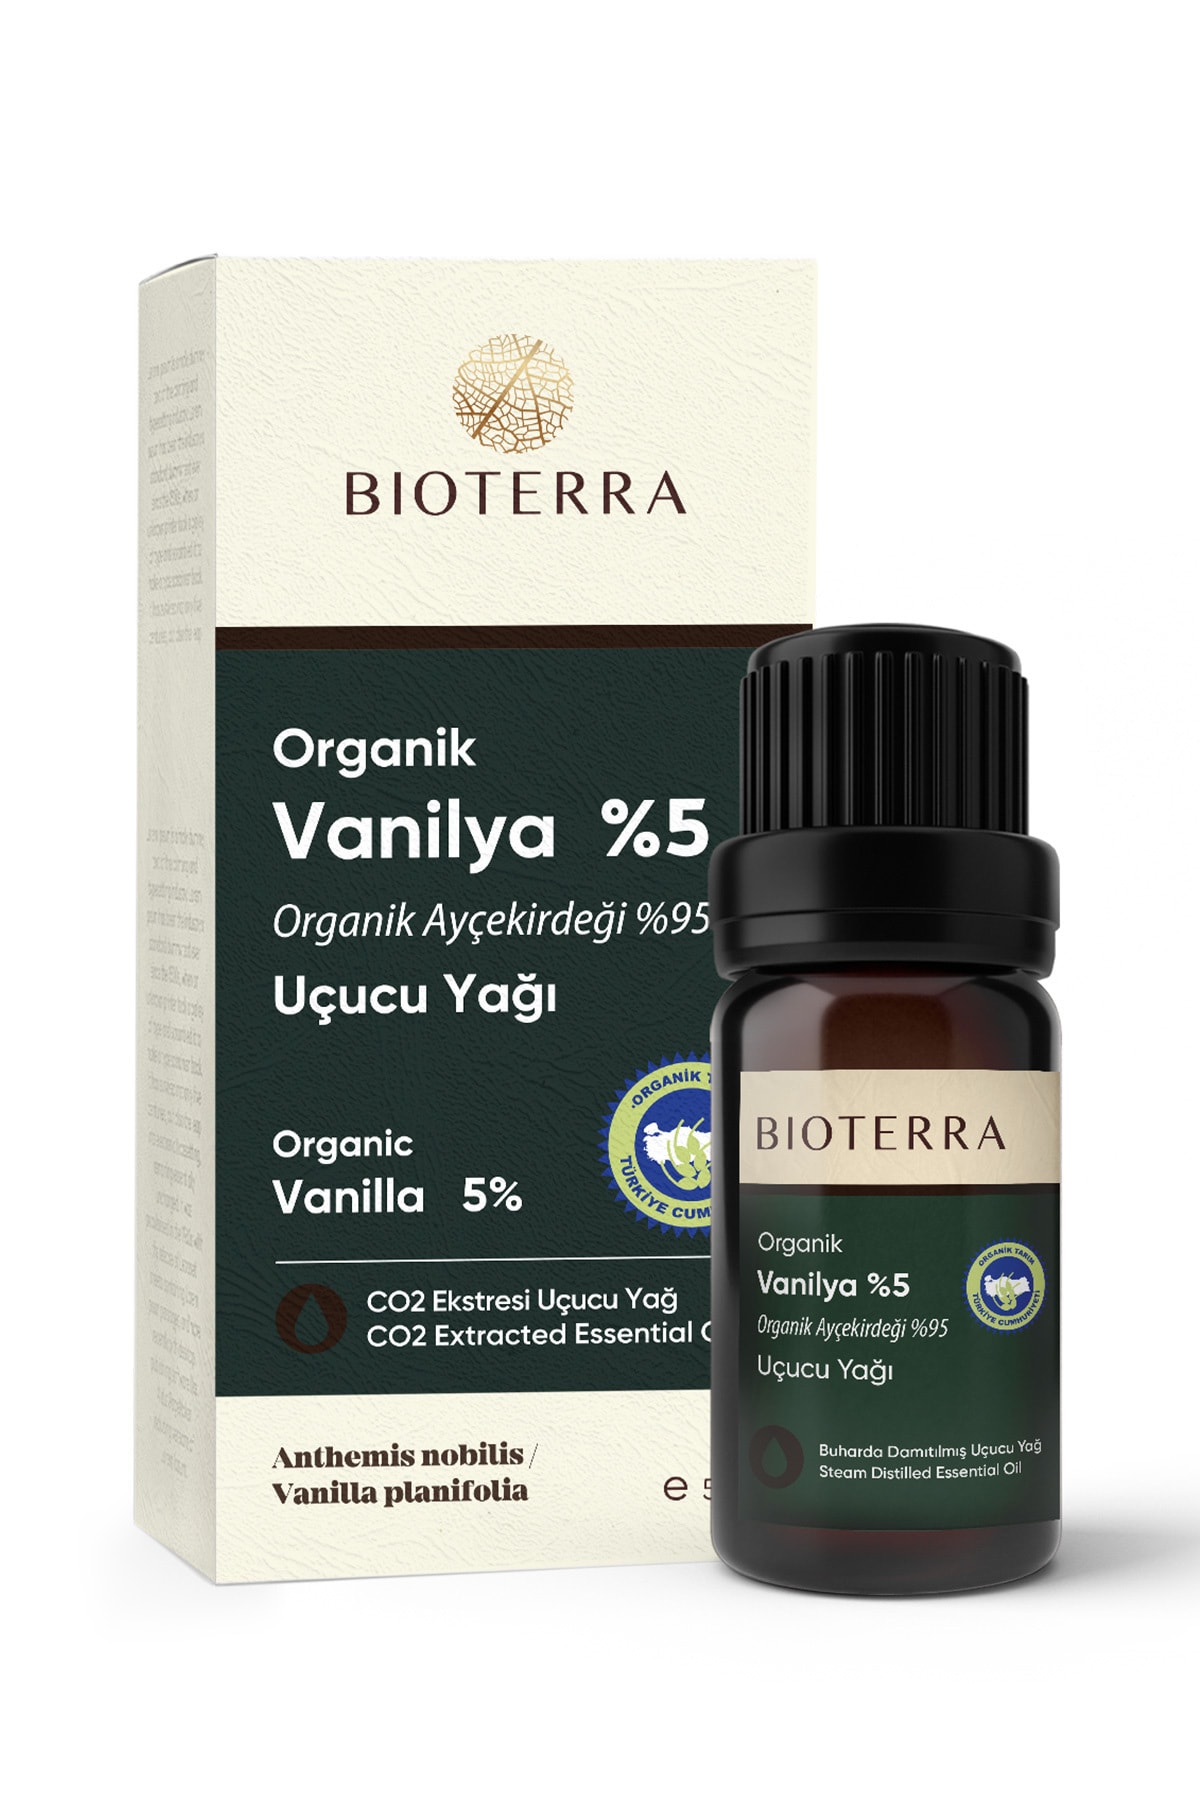 Bioterra Organik Vanilya Uçucu Yağı 5 ml